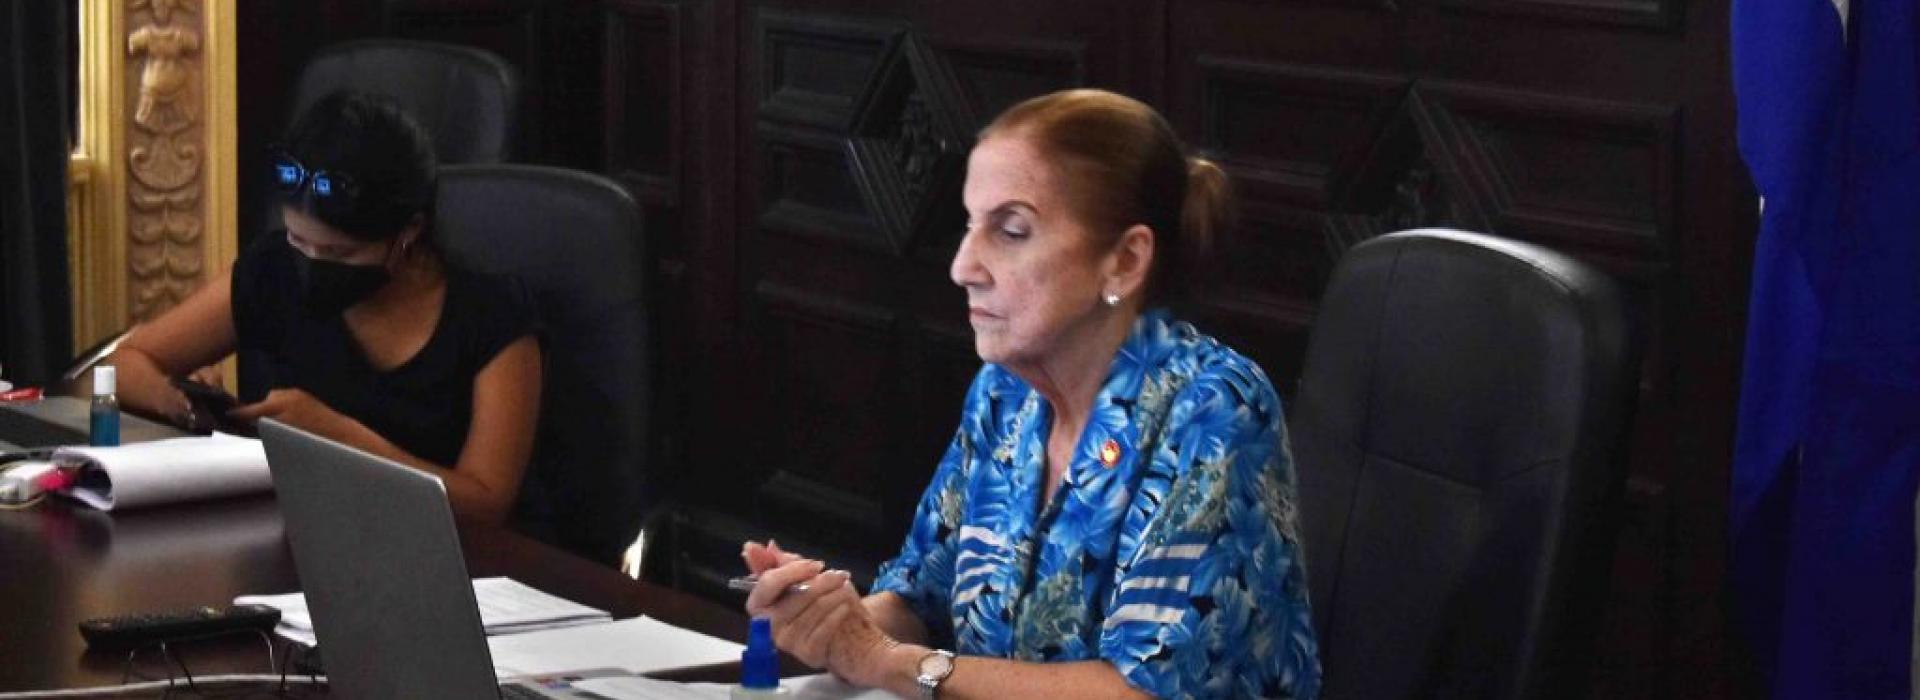 Participa Cuba en reunión semi-presencial de la Junta Directiva del Parlatino